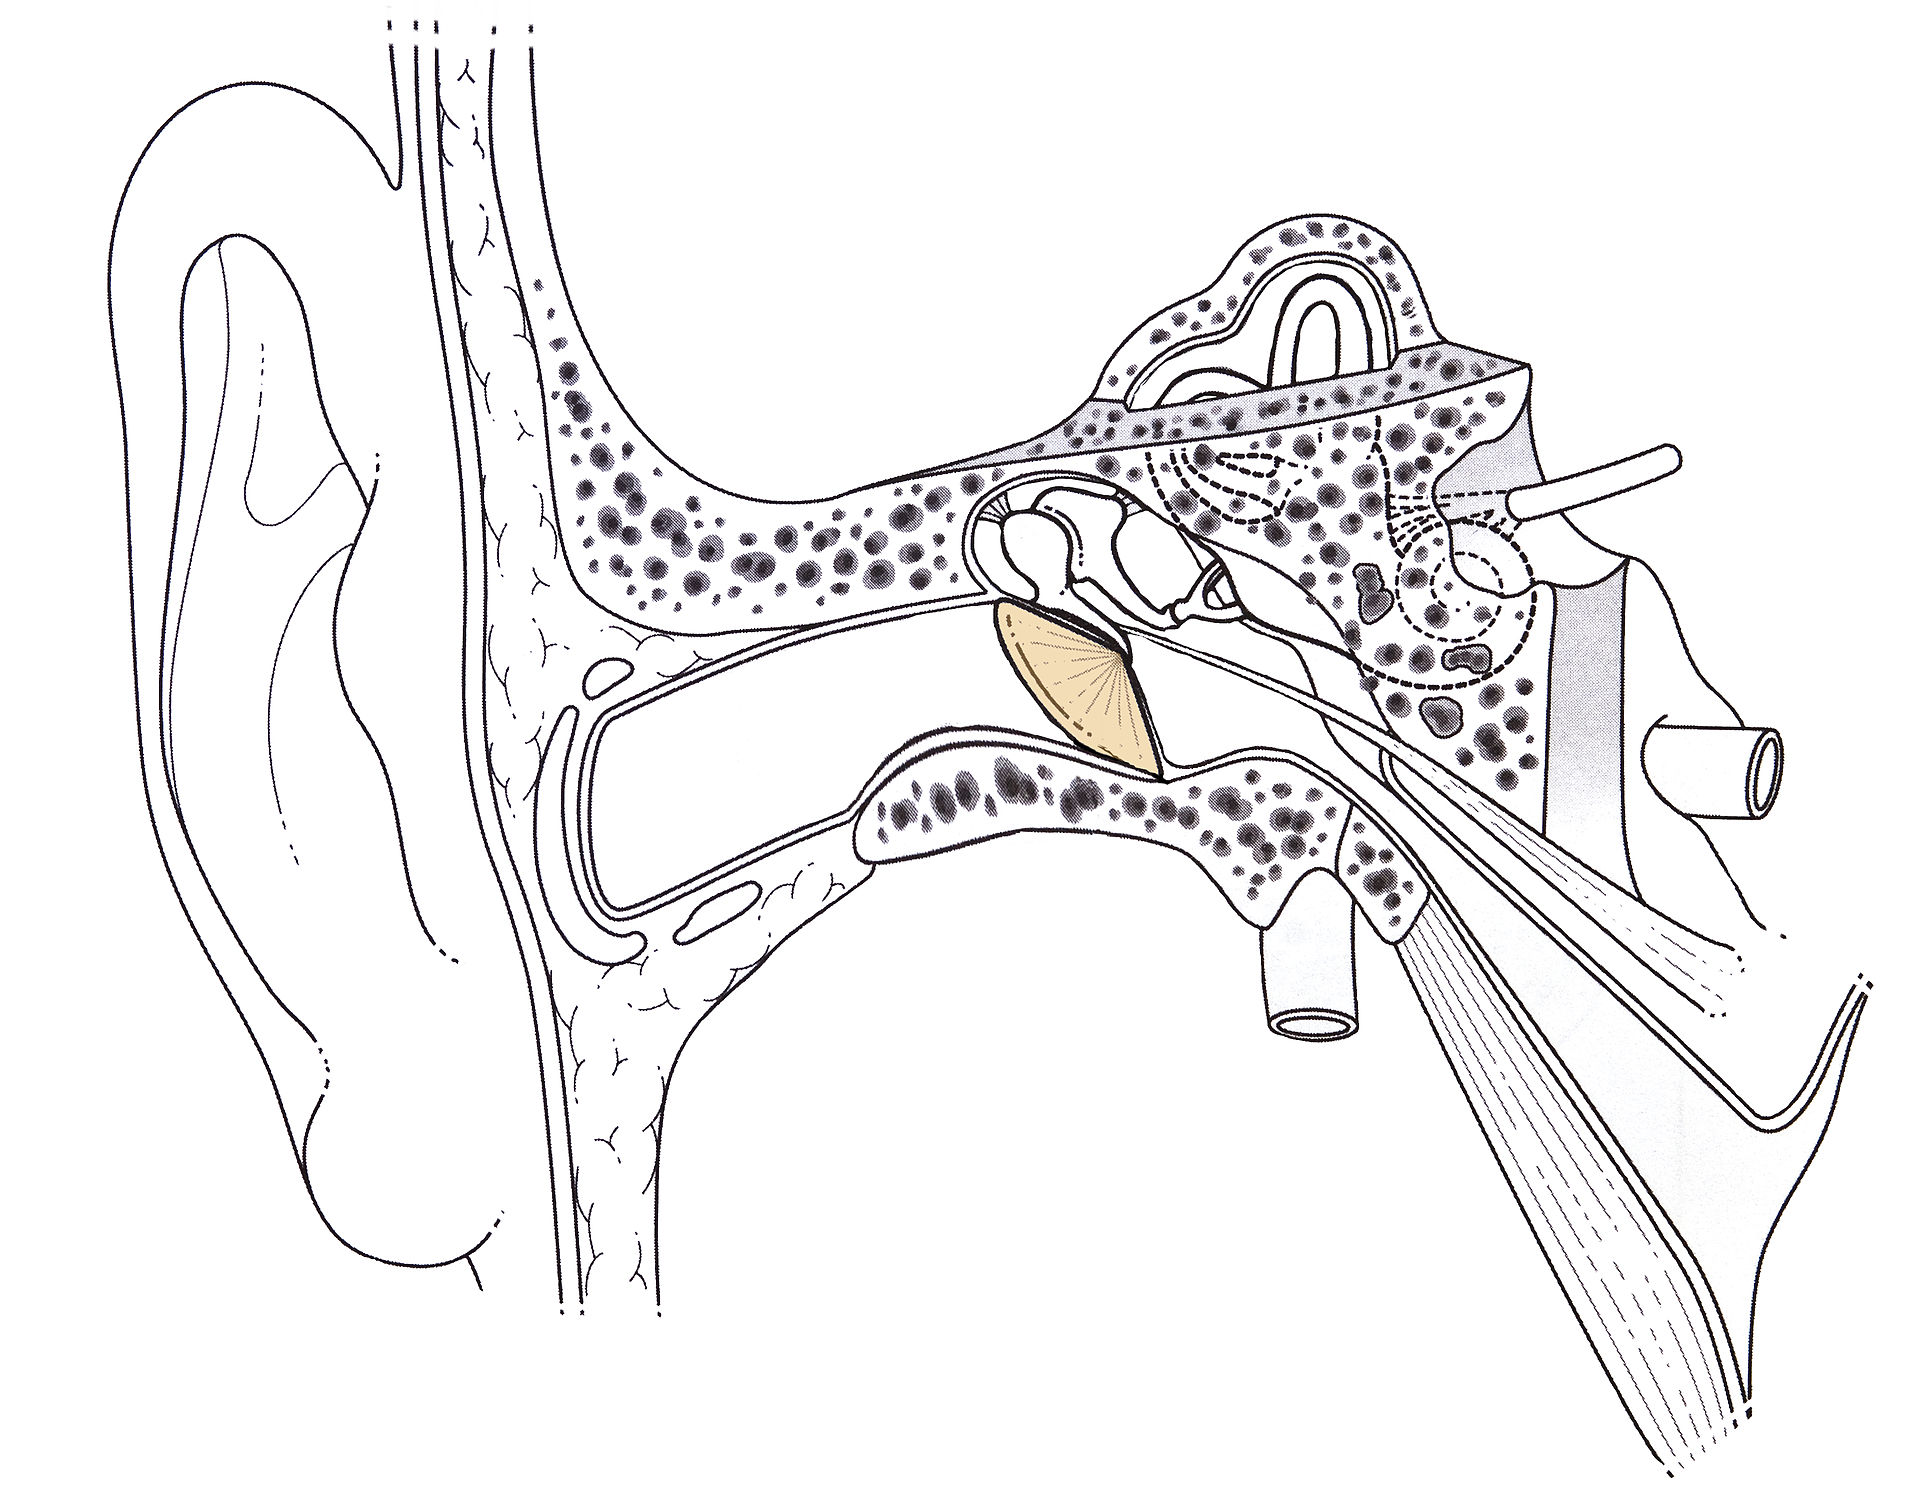 Schéma de l’oreille humaine. Le tympan est en jaune. Apanage des animaux terrestres, cet organe est fixé sur des os embryologiquement liés à ceux de la mâchoire, lesquels diffèrent entre, d'une part, les reptiles et les oiseaux et, d'autre part, les mammifères. © Wikipédia, CC BY-SA 3.0